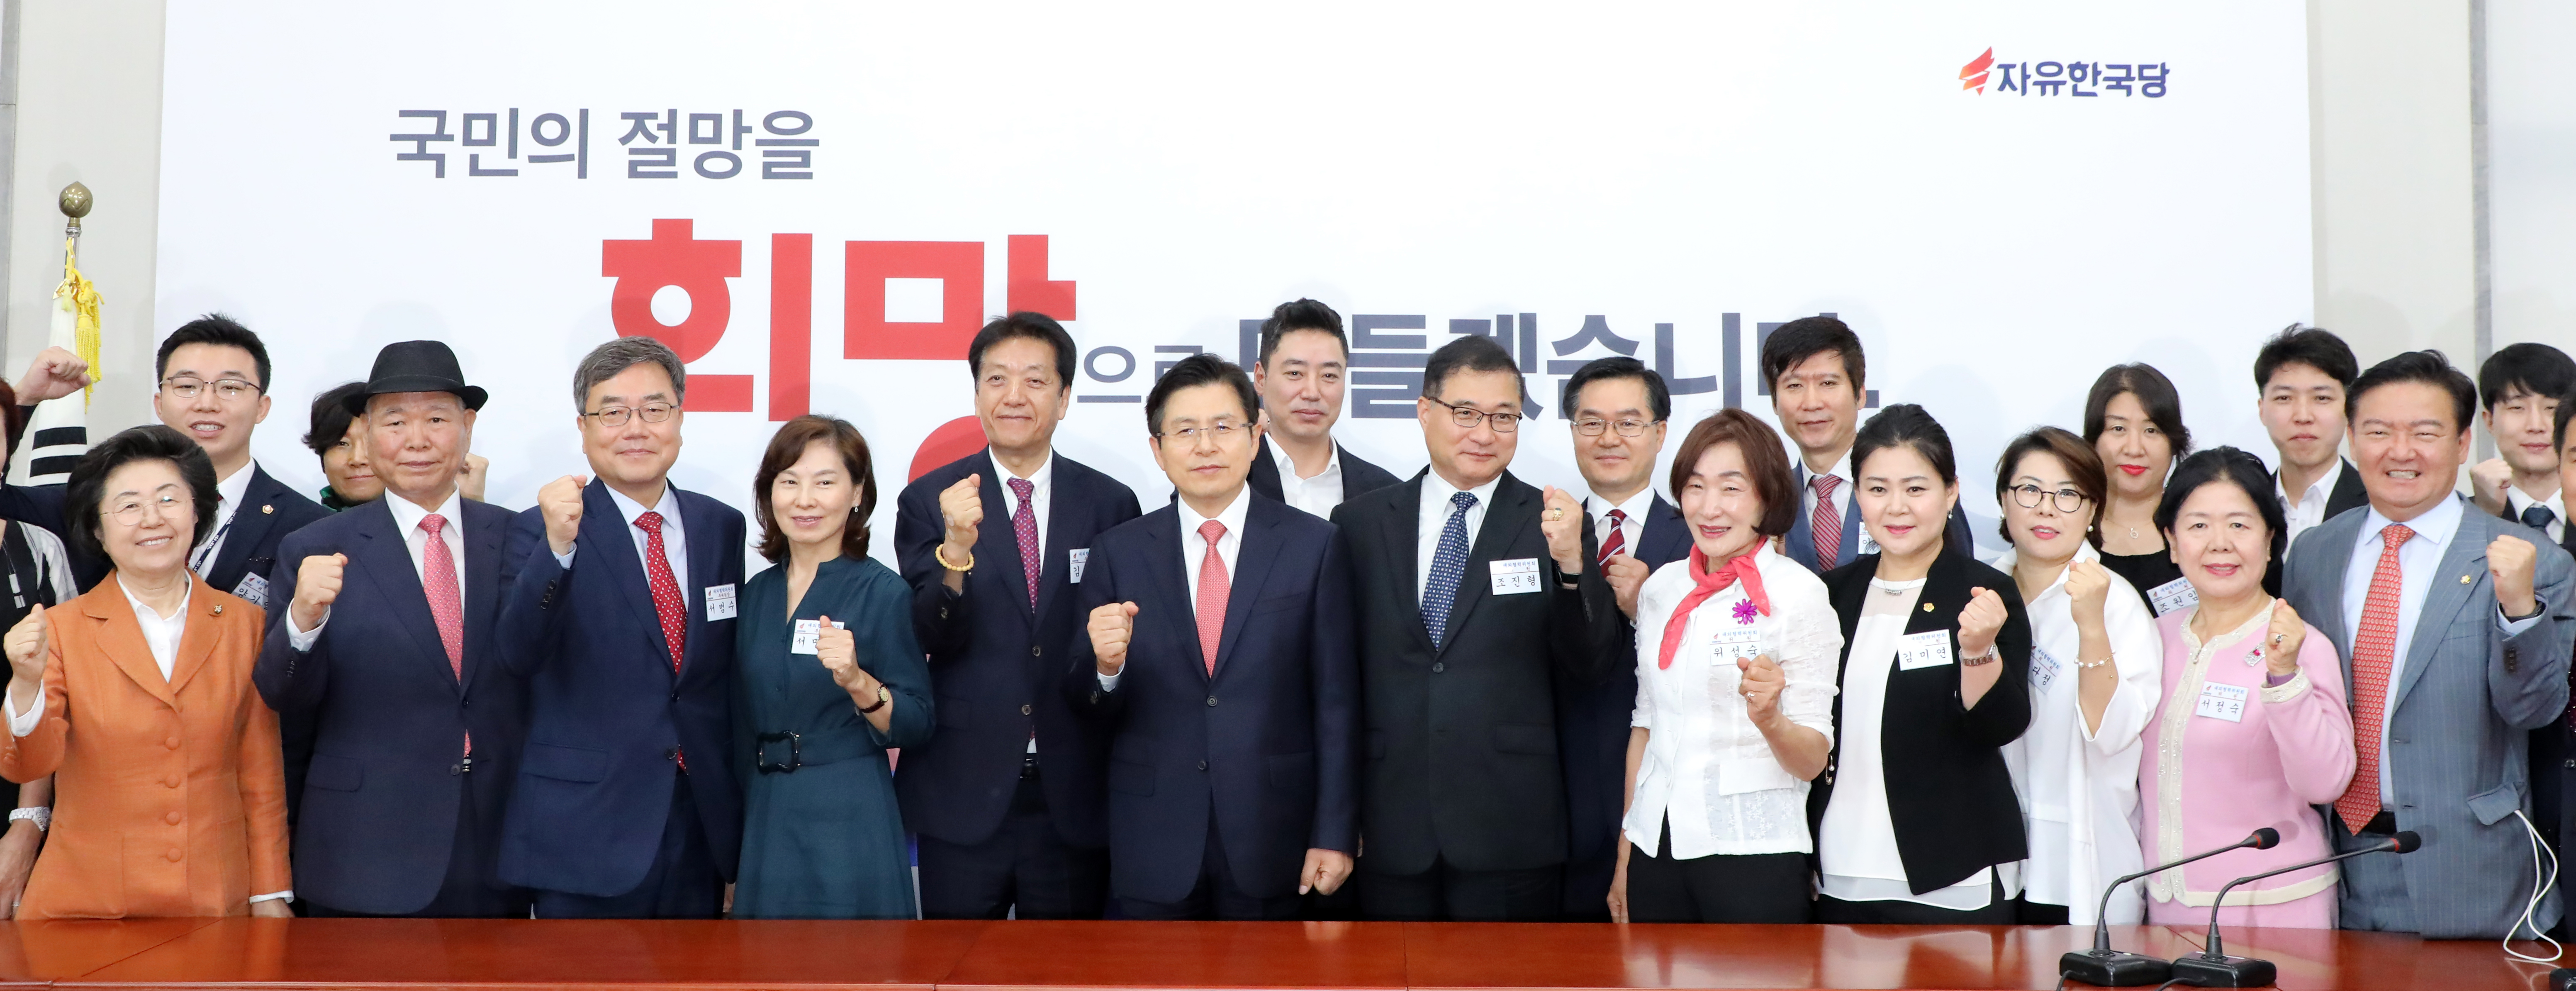 파이팅 외치는 한국당 대외협력위원회